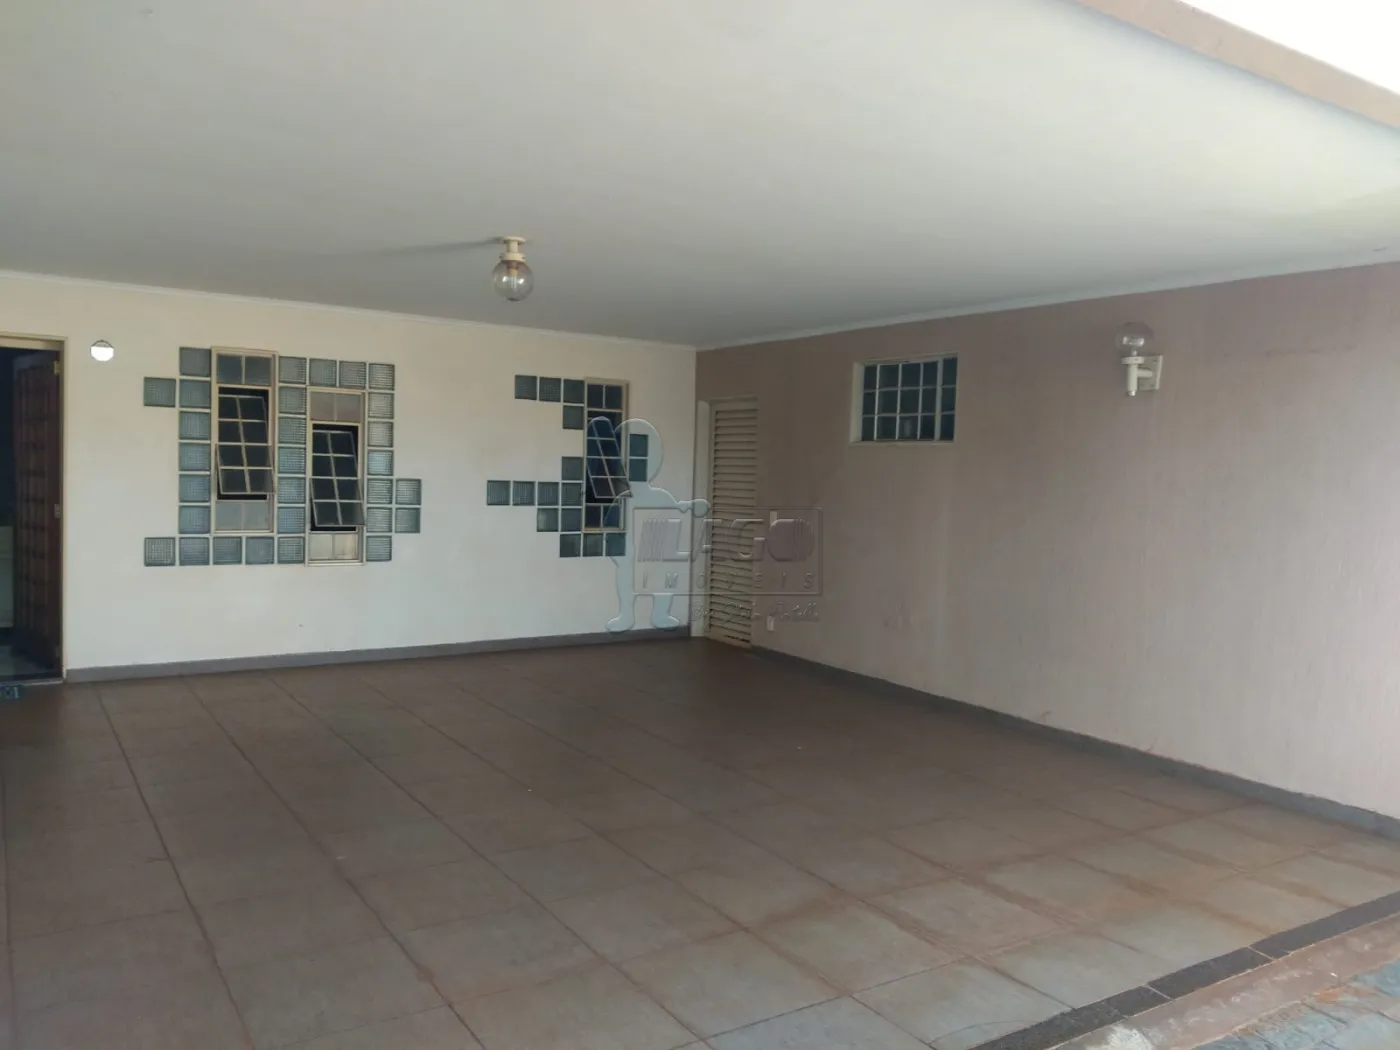 Comprar Casas / Padrão em Ribeirão Preto R$ 980.000,00 - Foto 2